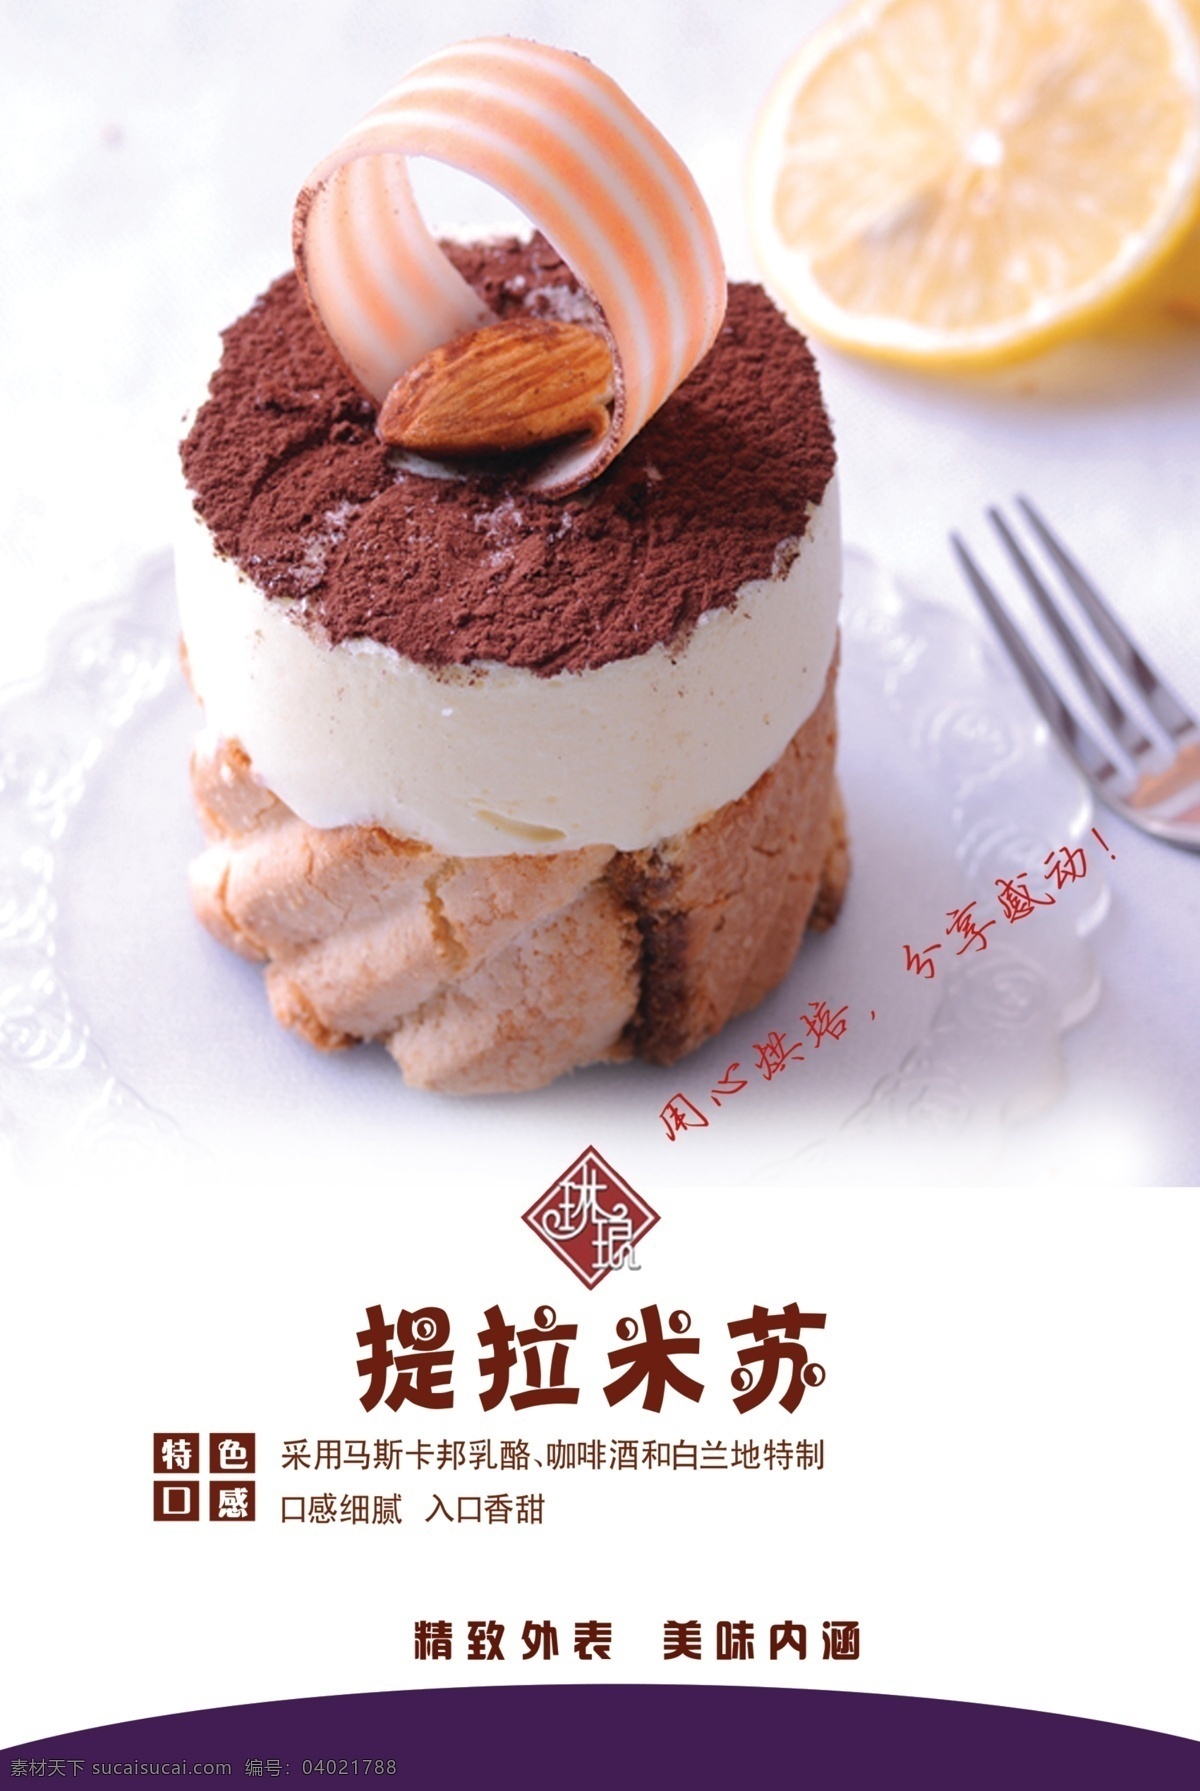 蛋糕 广告设计模板 烘培 红豆 面包 提拉米苏 源文件 提拉 米苏 模板下载 琳琅 矢量图 日常生活